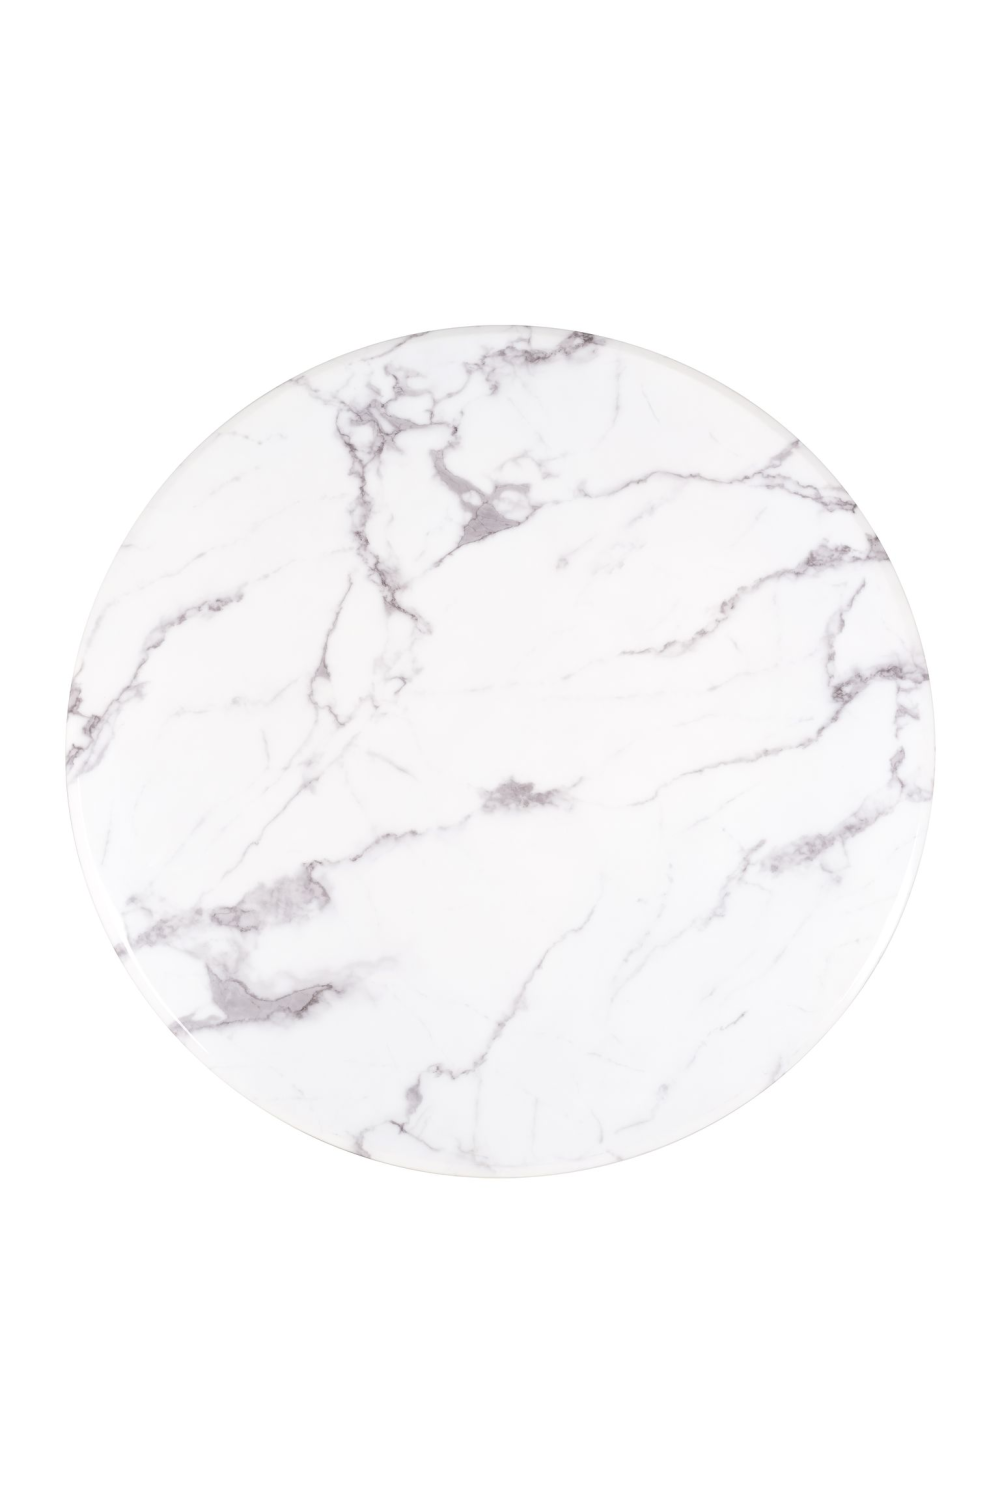 Round White Marble Pedestal Dining Table | OROA Degas | OROA.com